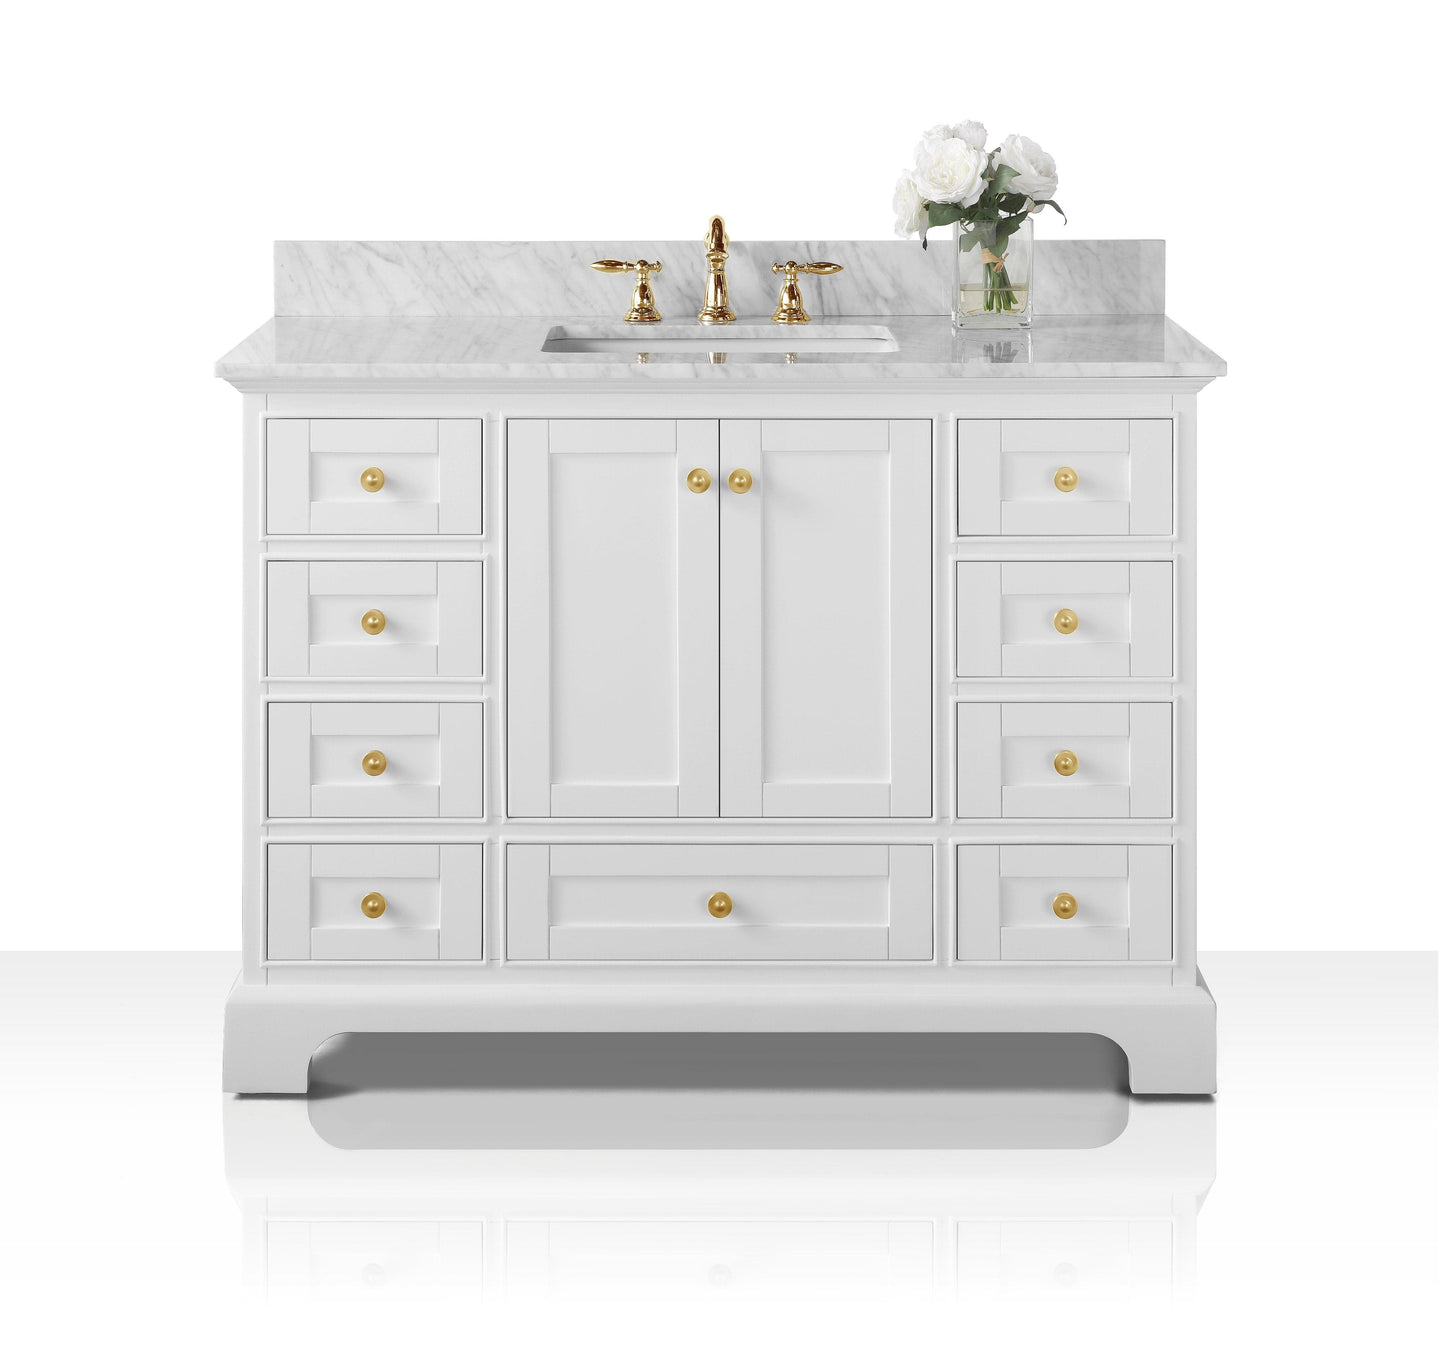 Ancerra Designs Audrey 48 in. Bath Vanity Set in White